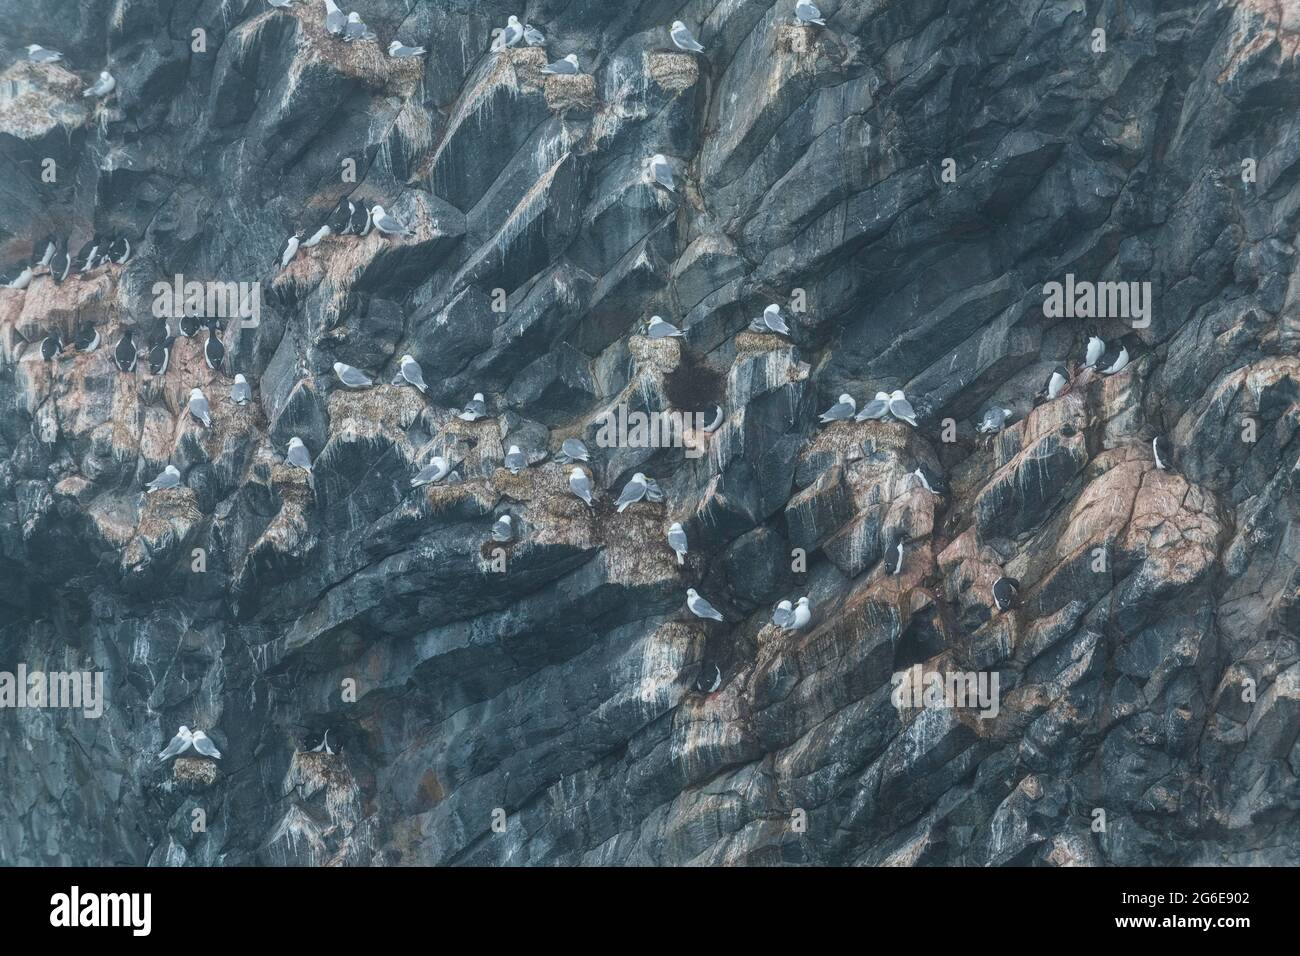 Colonie géante d'oiseaux de mer sur la formation spectaculaire de roche de basalte par colonnes, Skala Rubini ou Rubini rock, archipel de la Terre Franz Josef, Russie Banque D'Images